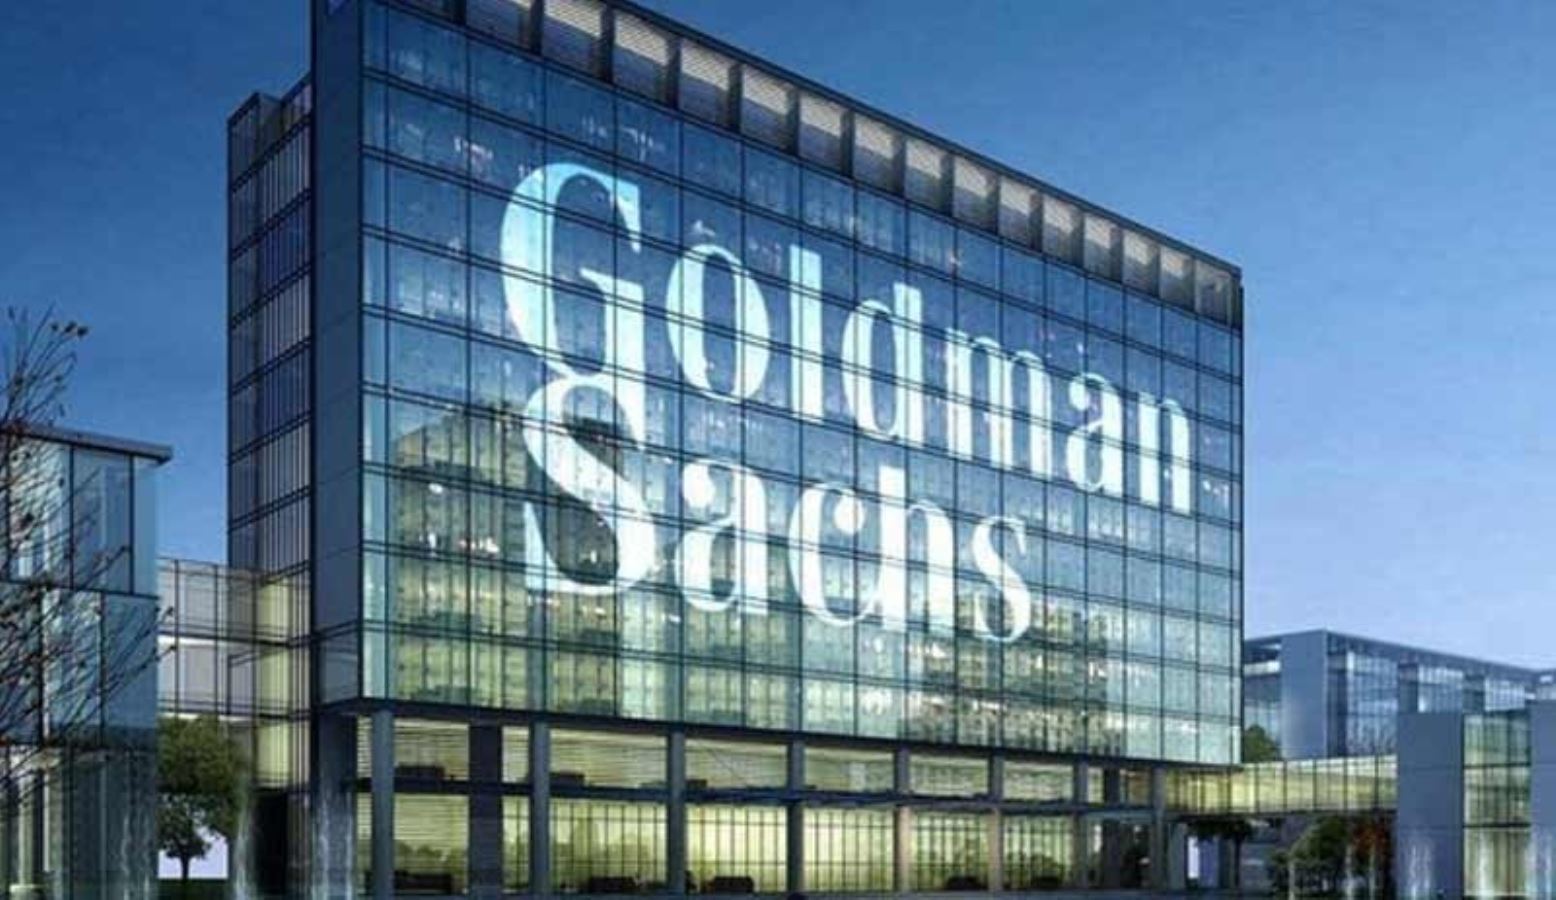 Goldman Sachs analizi: Altın, uzun vadede bitcoinden daha iyi